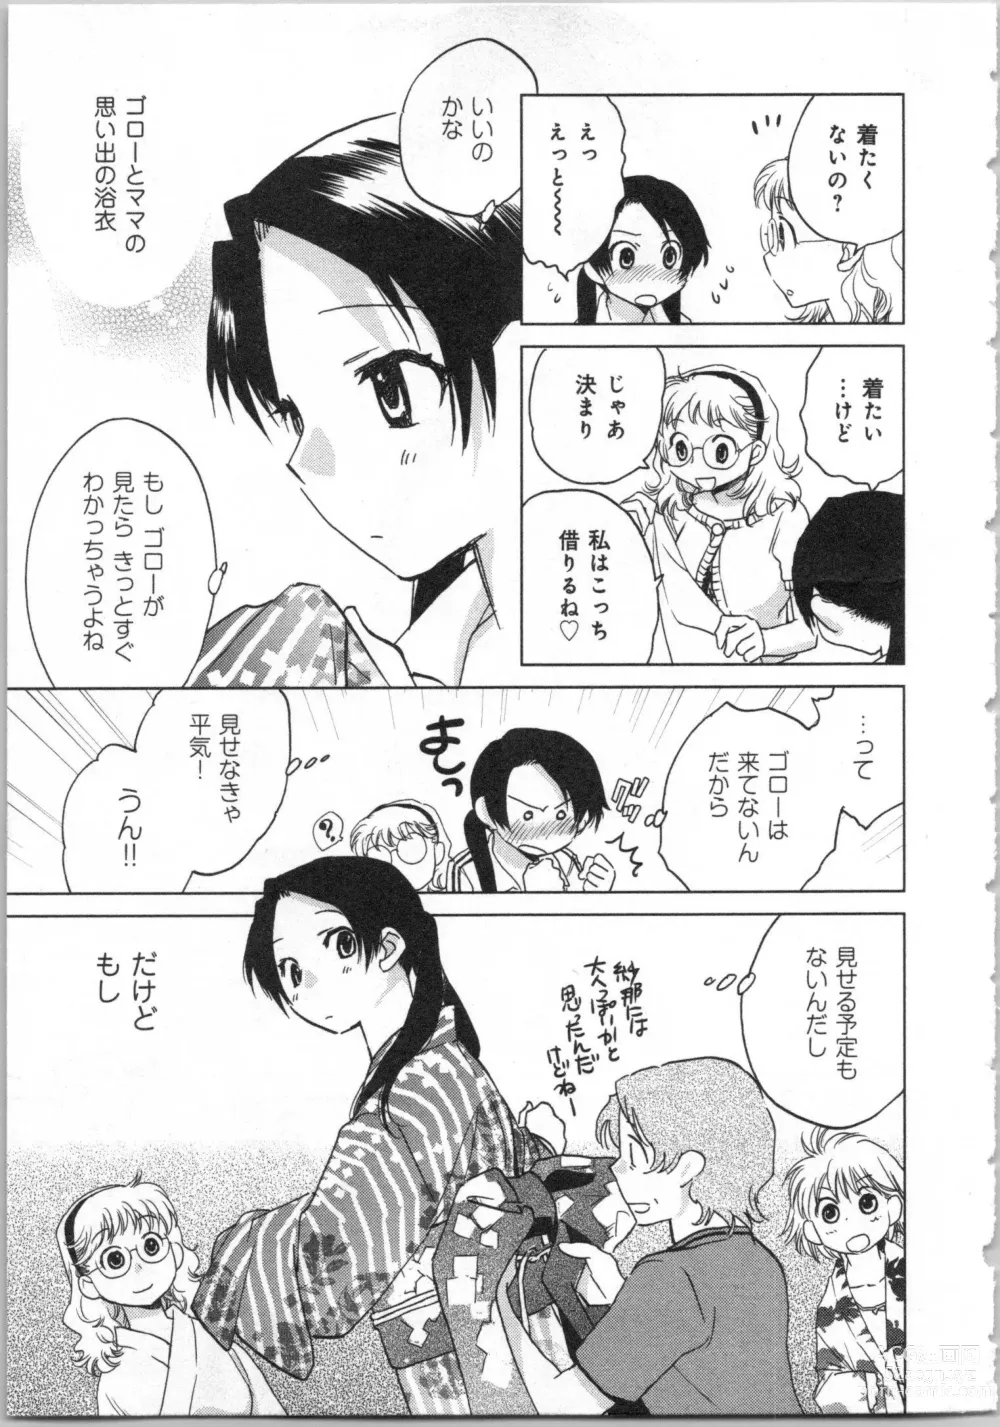 Page 7 of manga Issho ni Kurasu Tame no Yakusoku o Itsuka Vol 2